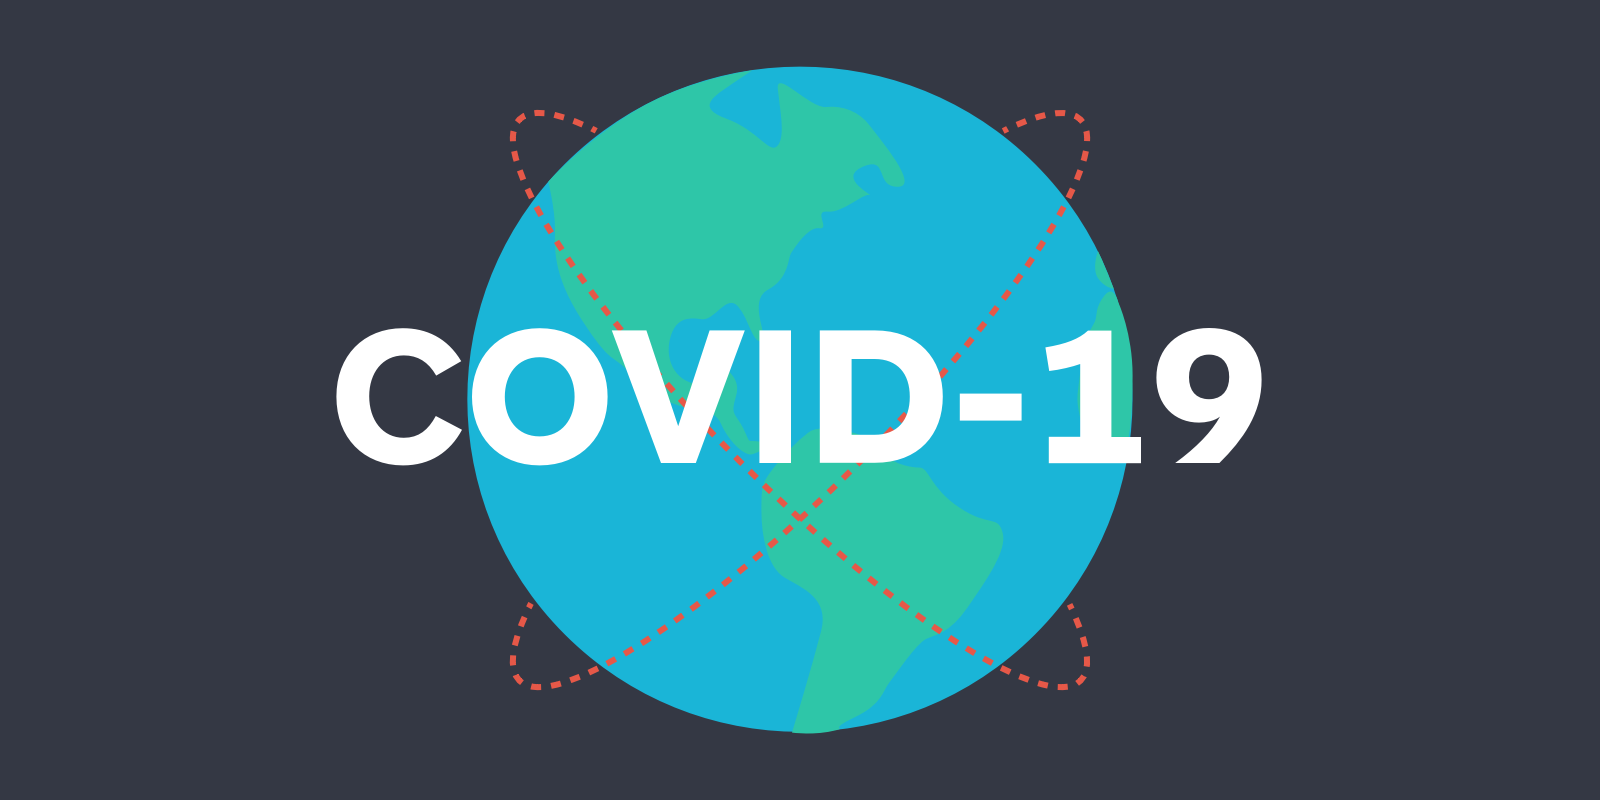 Lợi dụng COVID-19 làm marketing: Hay hay dở? marketingreview.vn